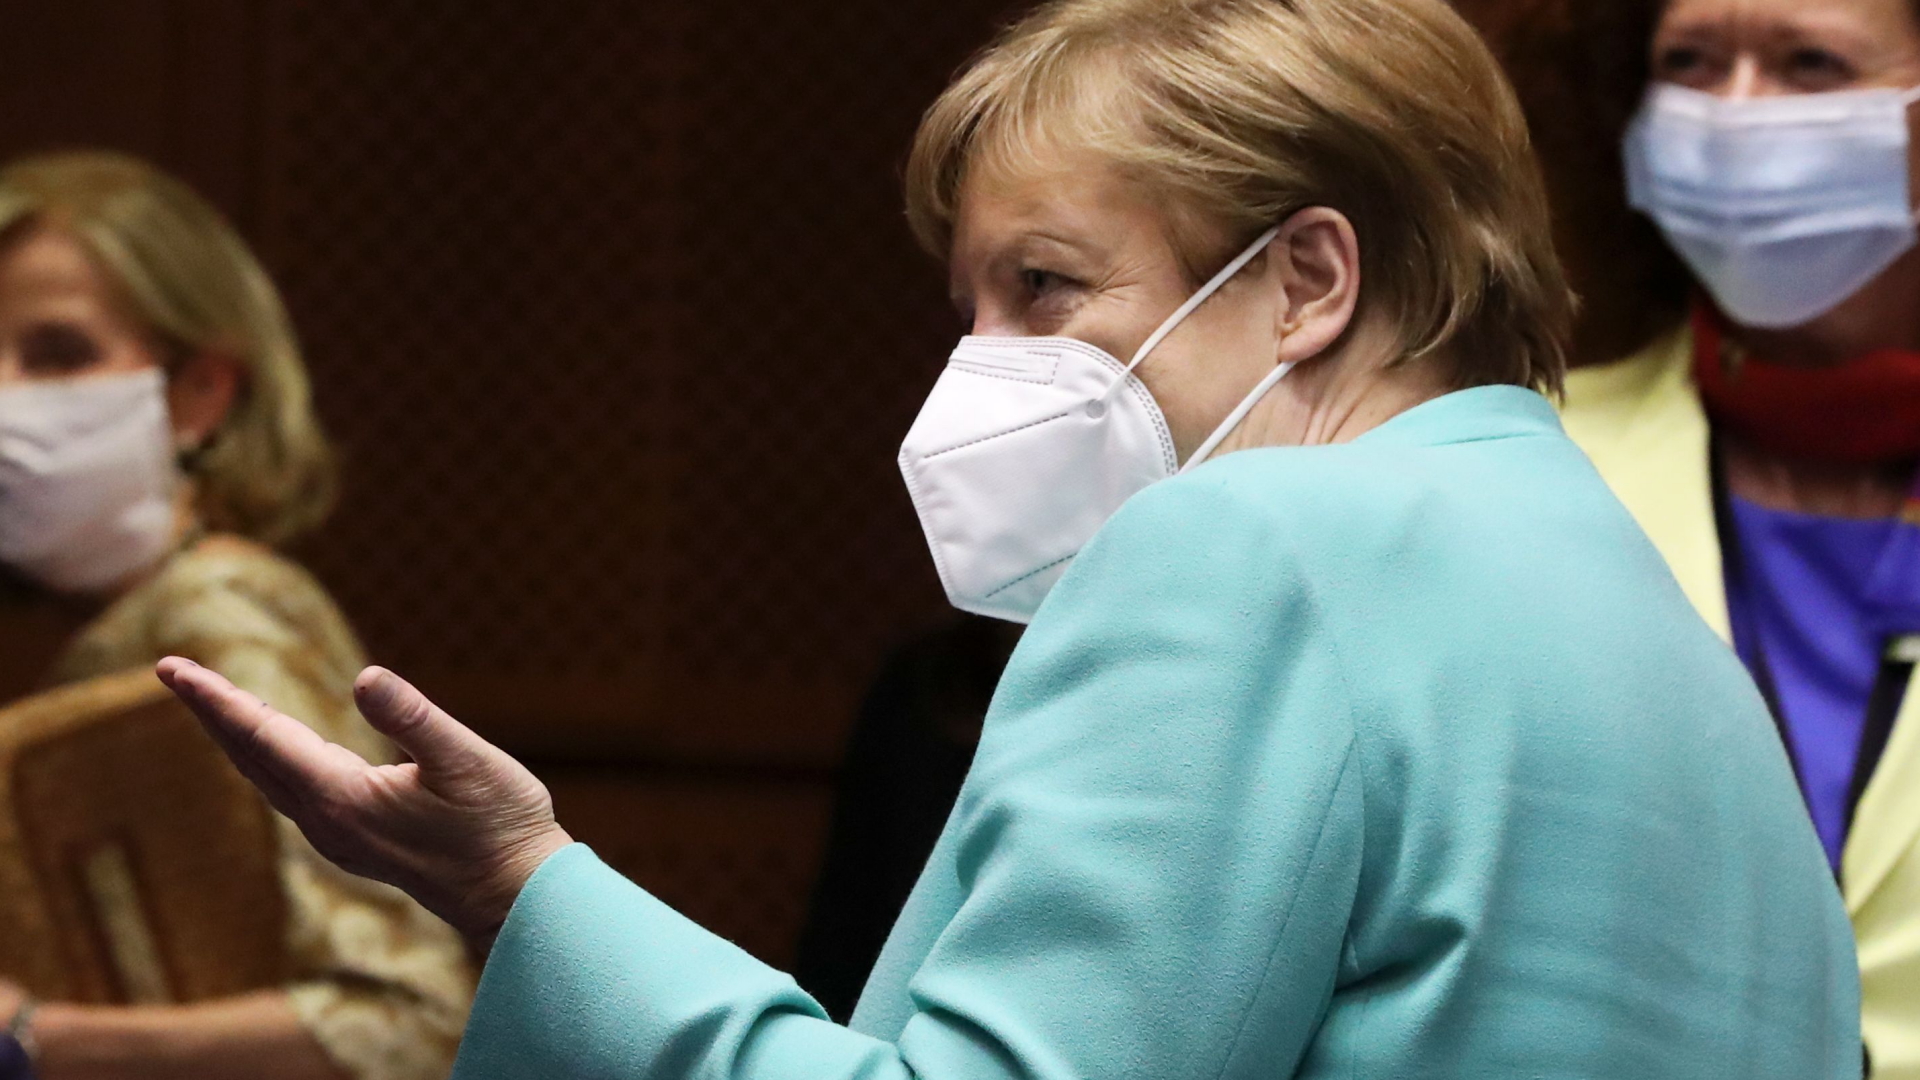 Bundeskanzlerin Angela Merkel trägt im EU-Parlament eine weiße Corona-Schutzmaske. | YVES HERMAN/POOL/EPA-EFE/Shutter